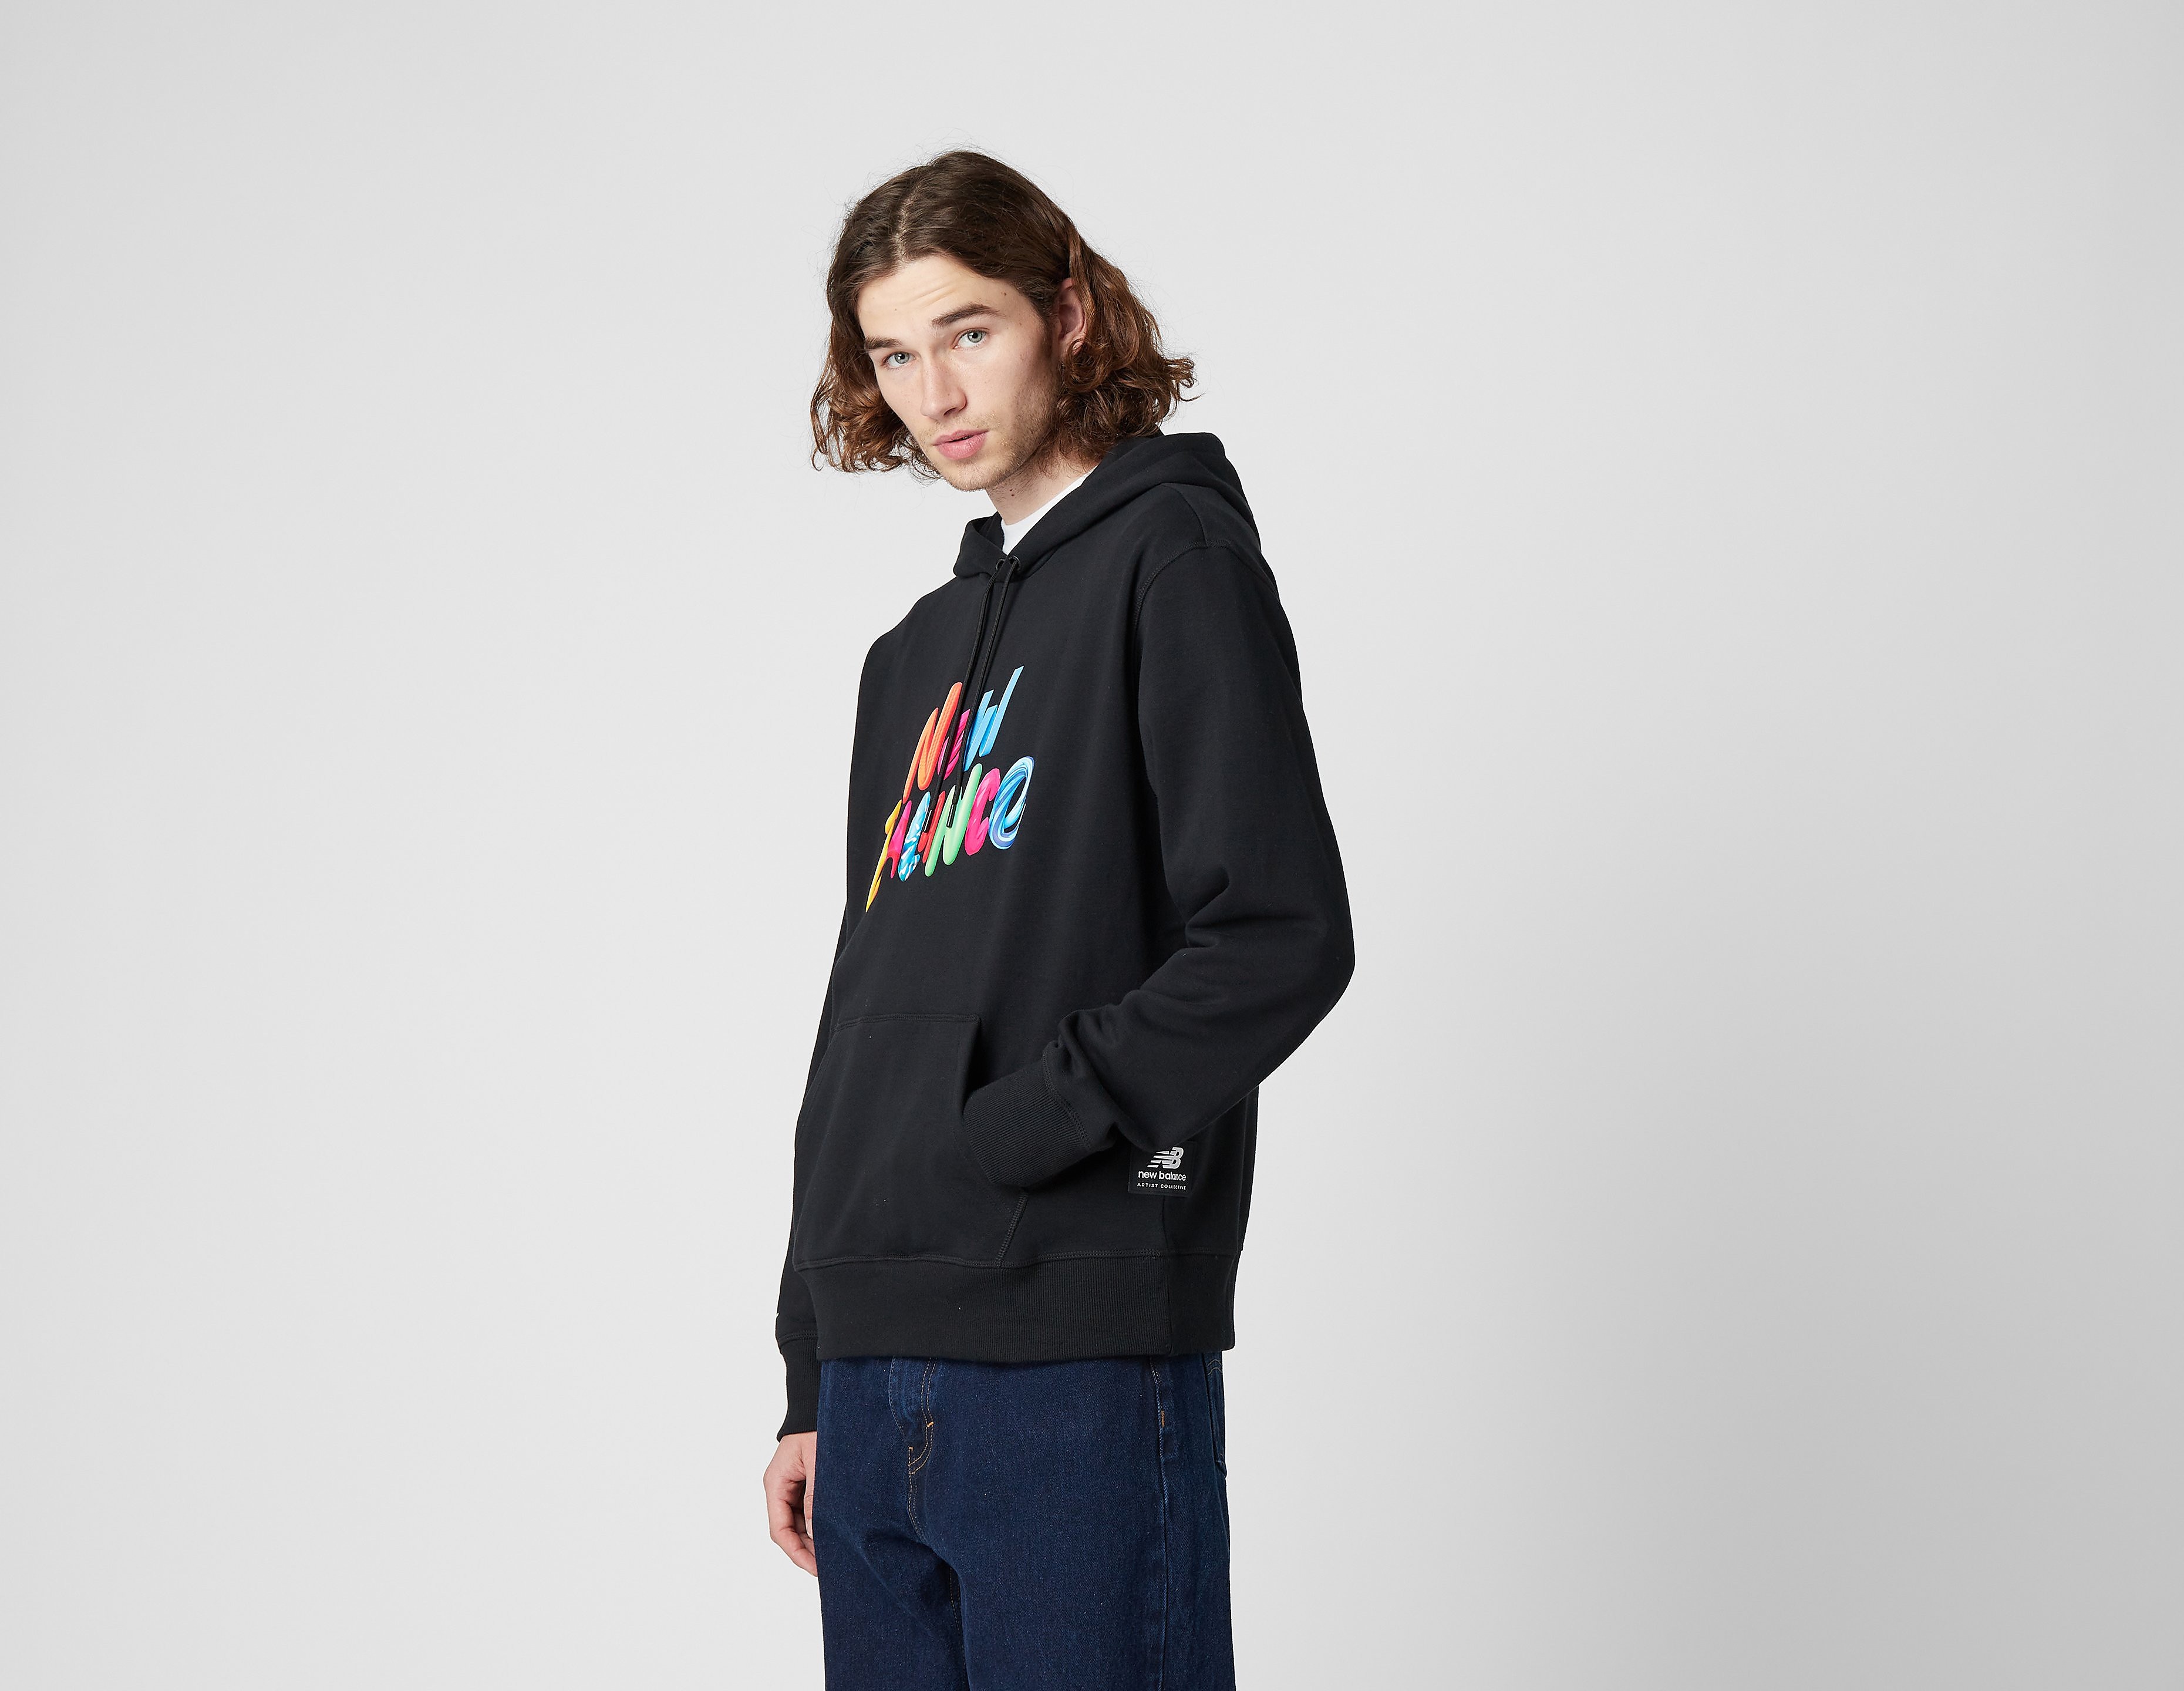 New Balance velvet spectrum graphic hoodie